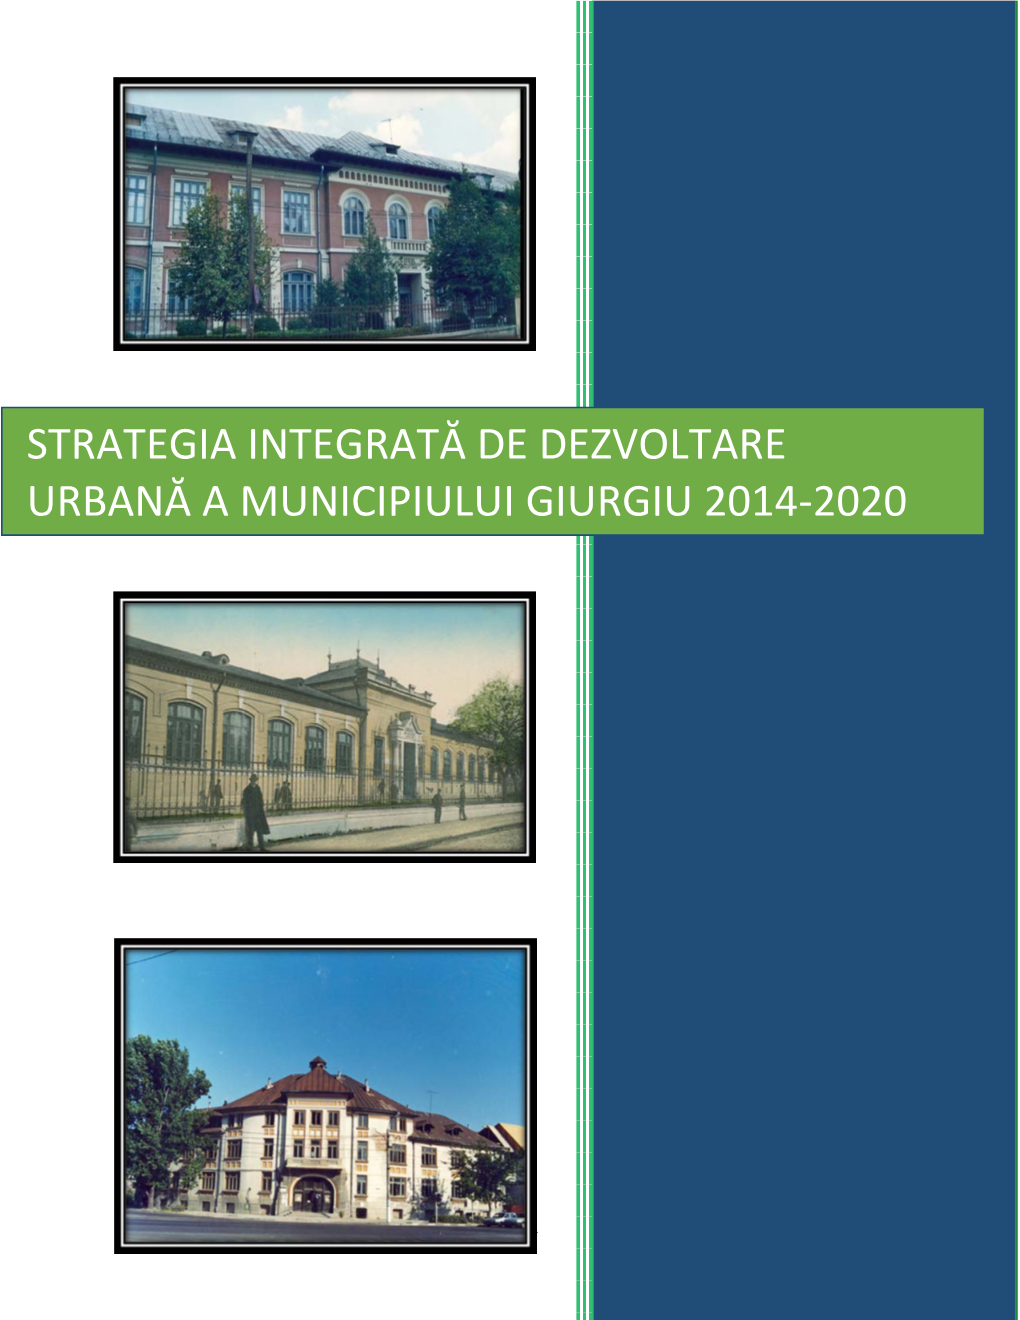 Strategia Integrată De Dezvoltare Urbană a Municipiului Giurgiu 2014-2020